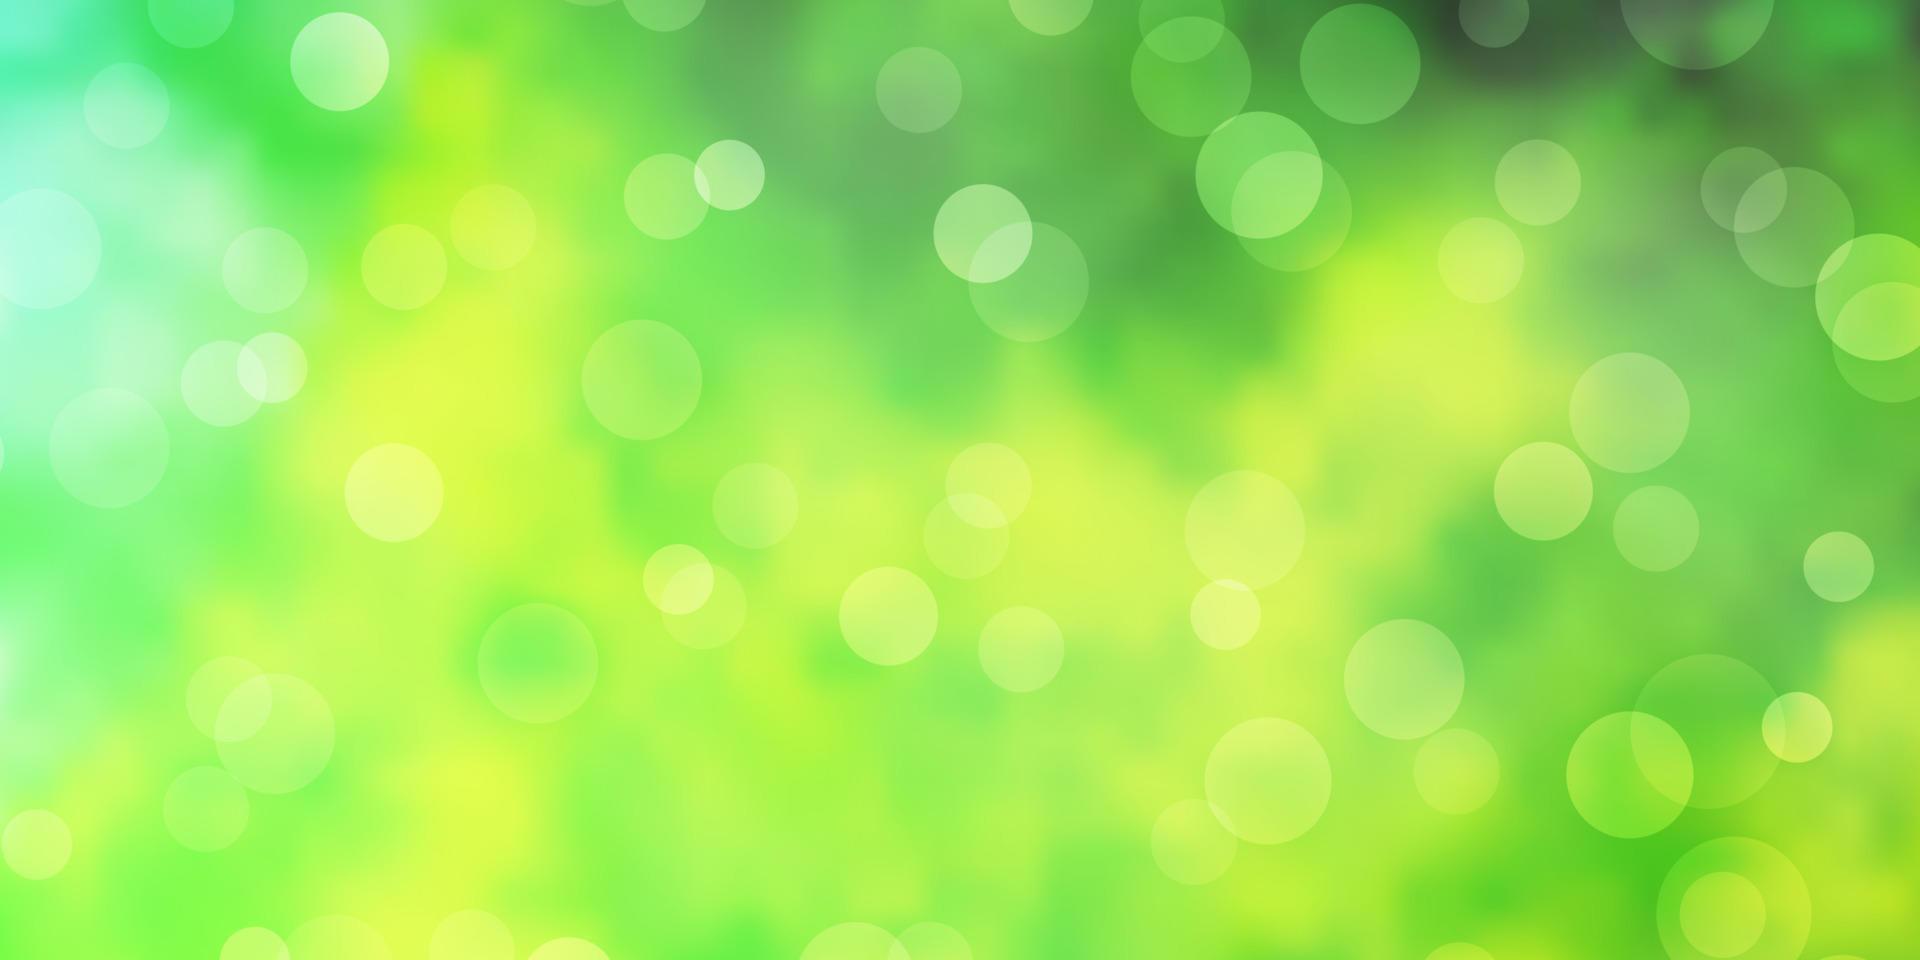 toile de fond de vecteur vert clair, jaune avec des cercles.